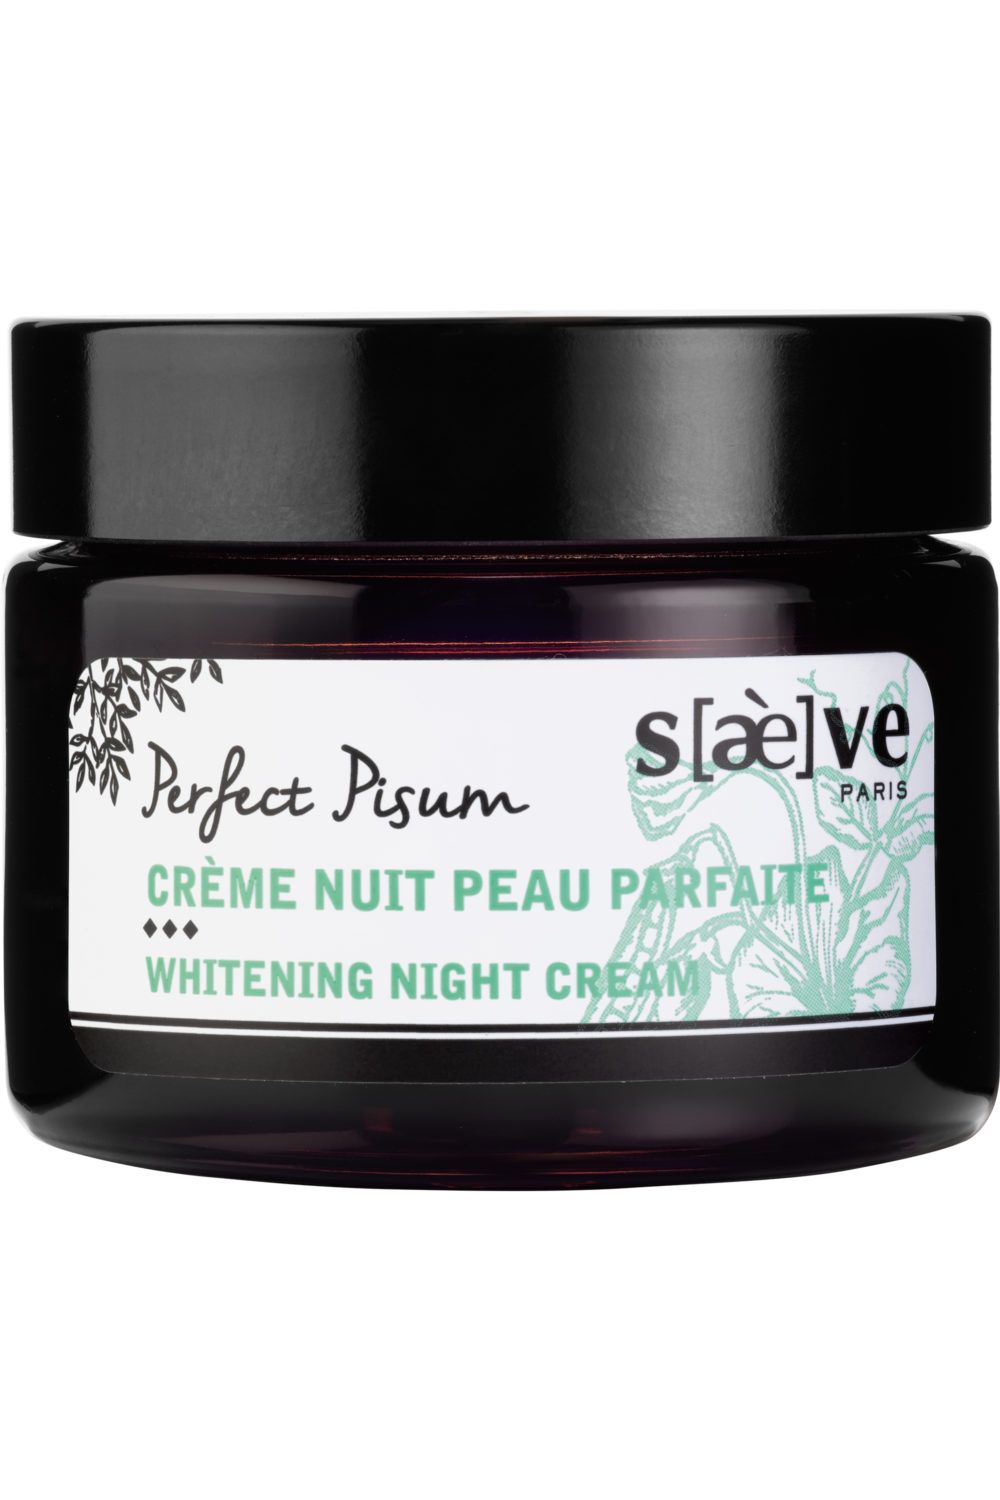 Saeve - Crème nuit peau parfaite Perfect Pisum